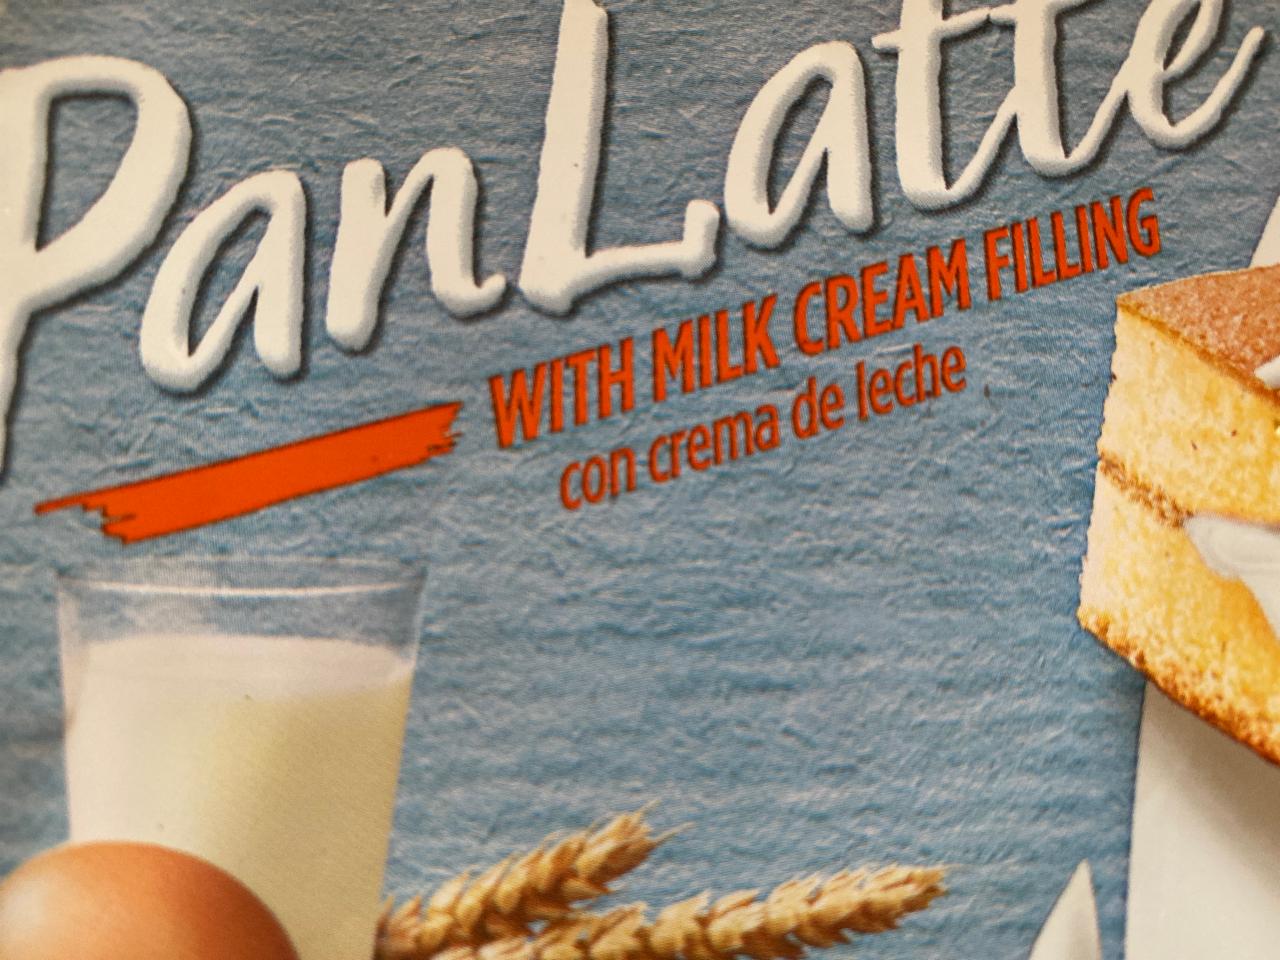 Fotografie - PanLatte with milk cream filling Balconi